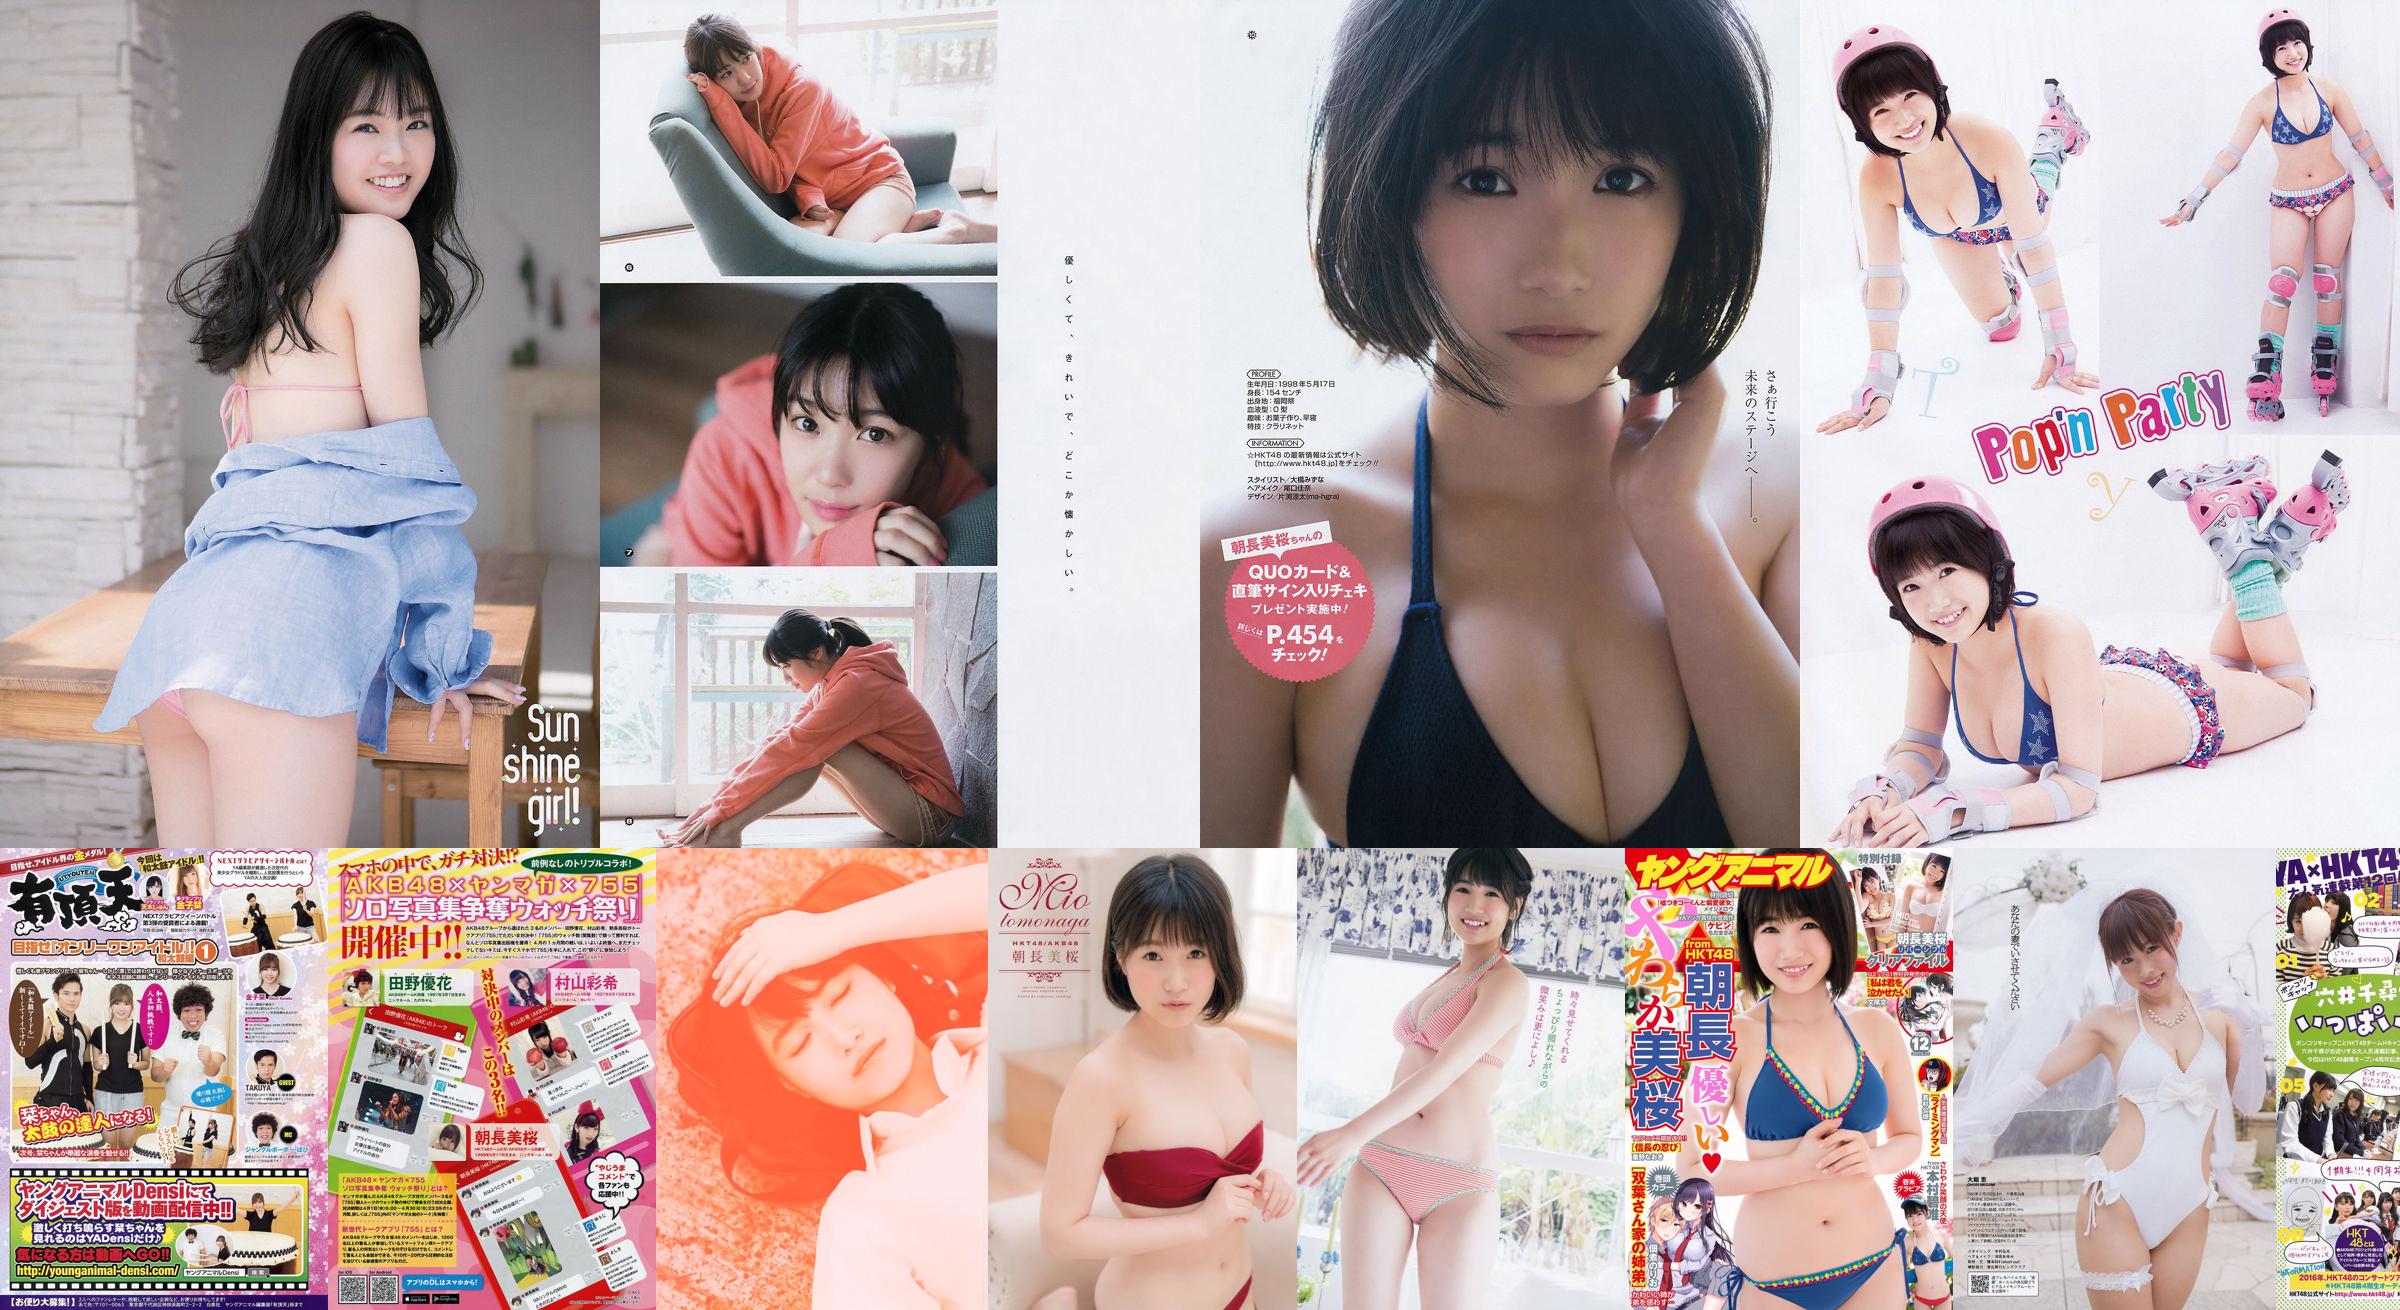 [Manga Action] Mio Tomonaga 2016 No.22 Photographie No.623f7b Page 1